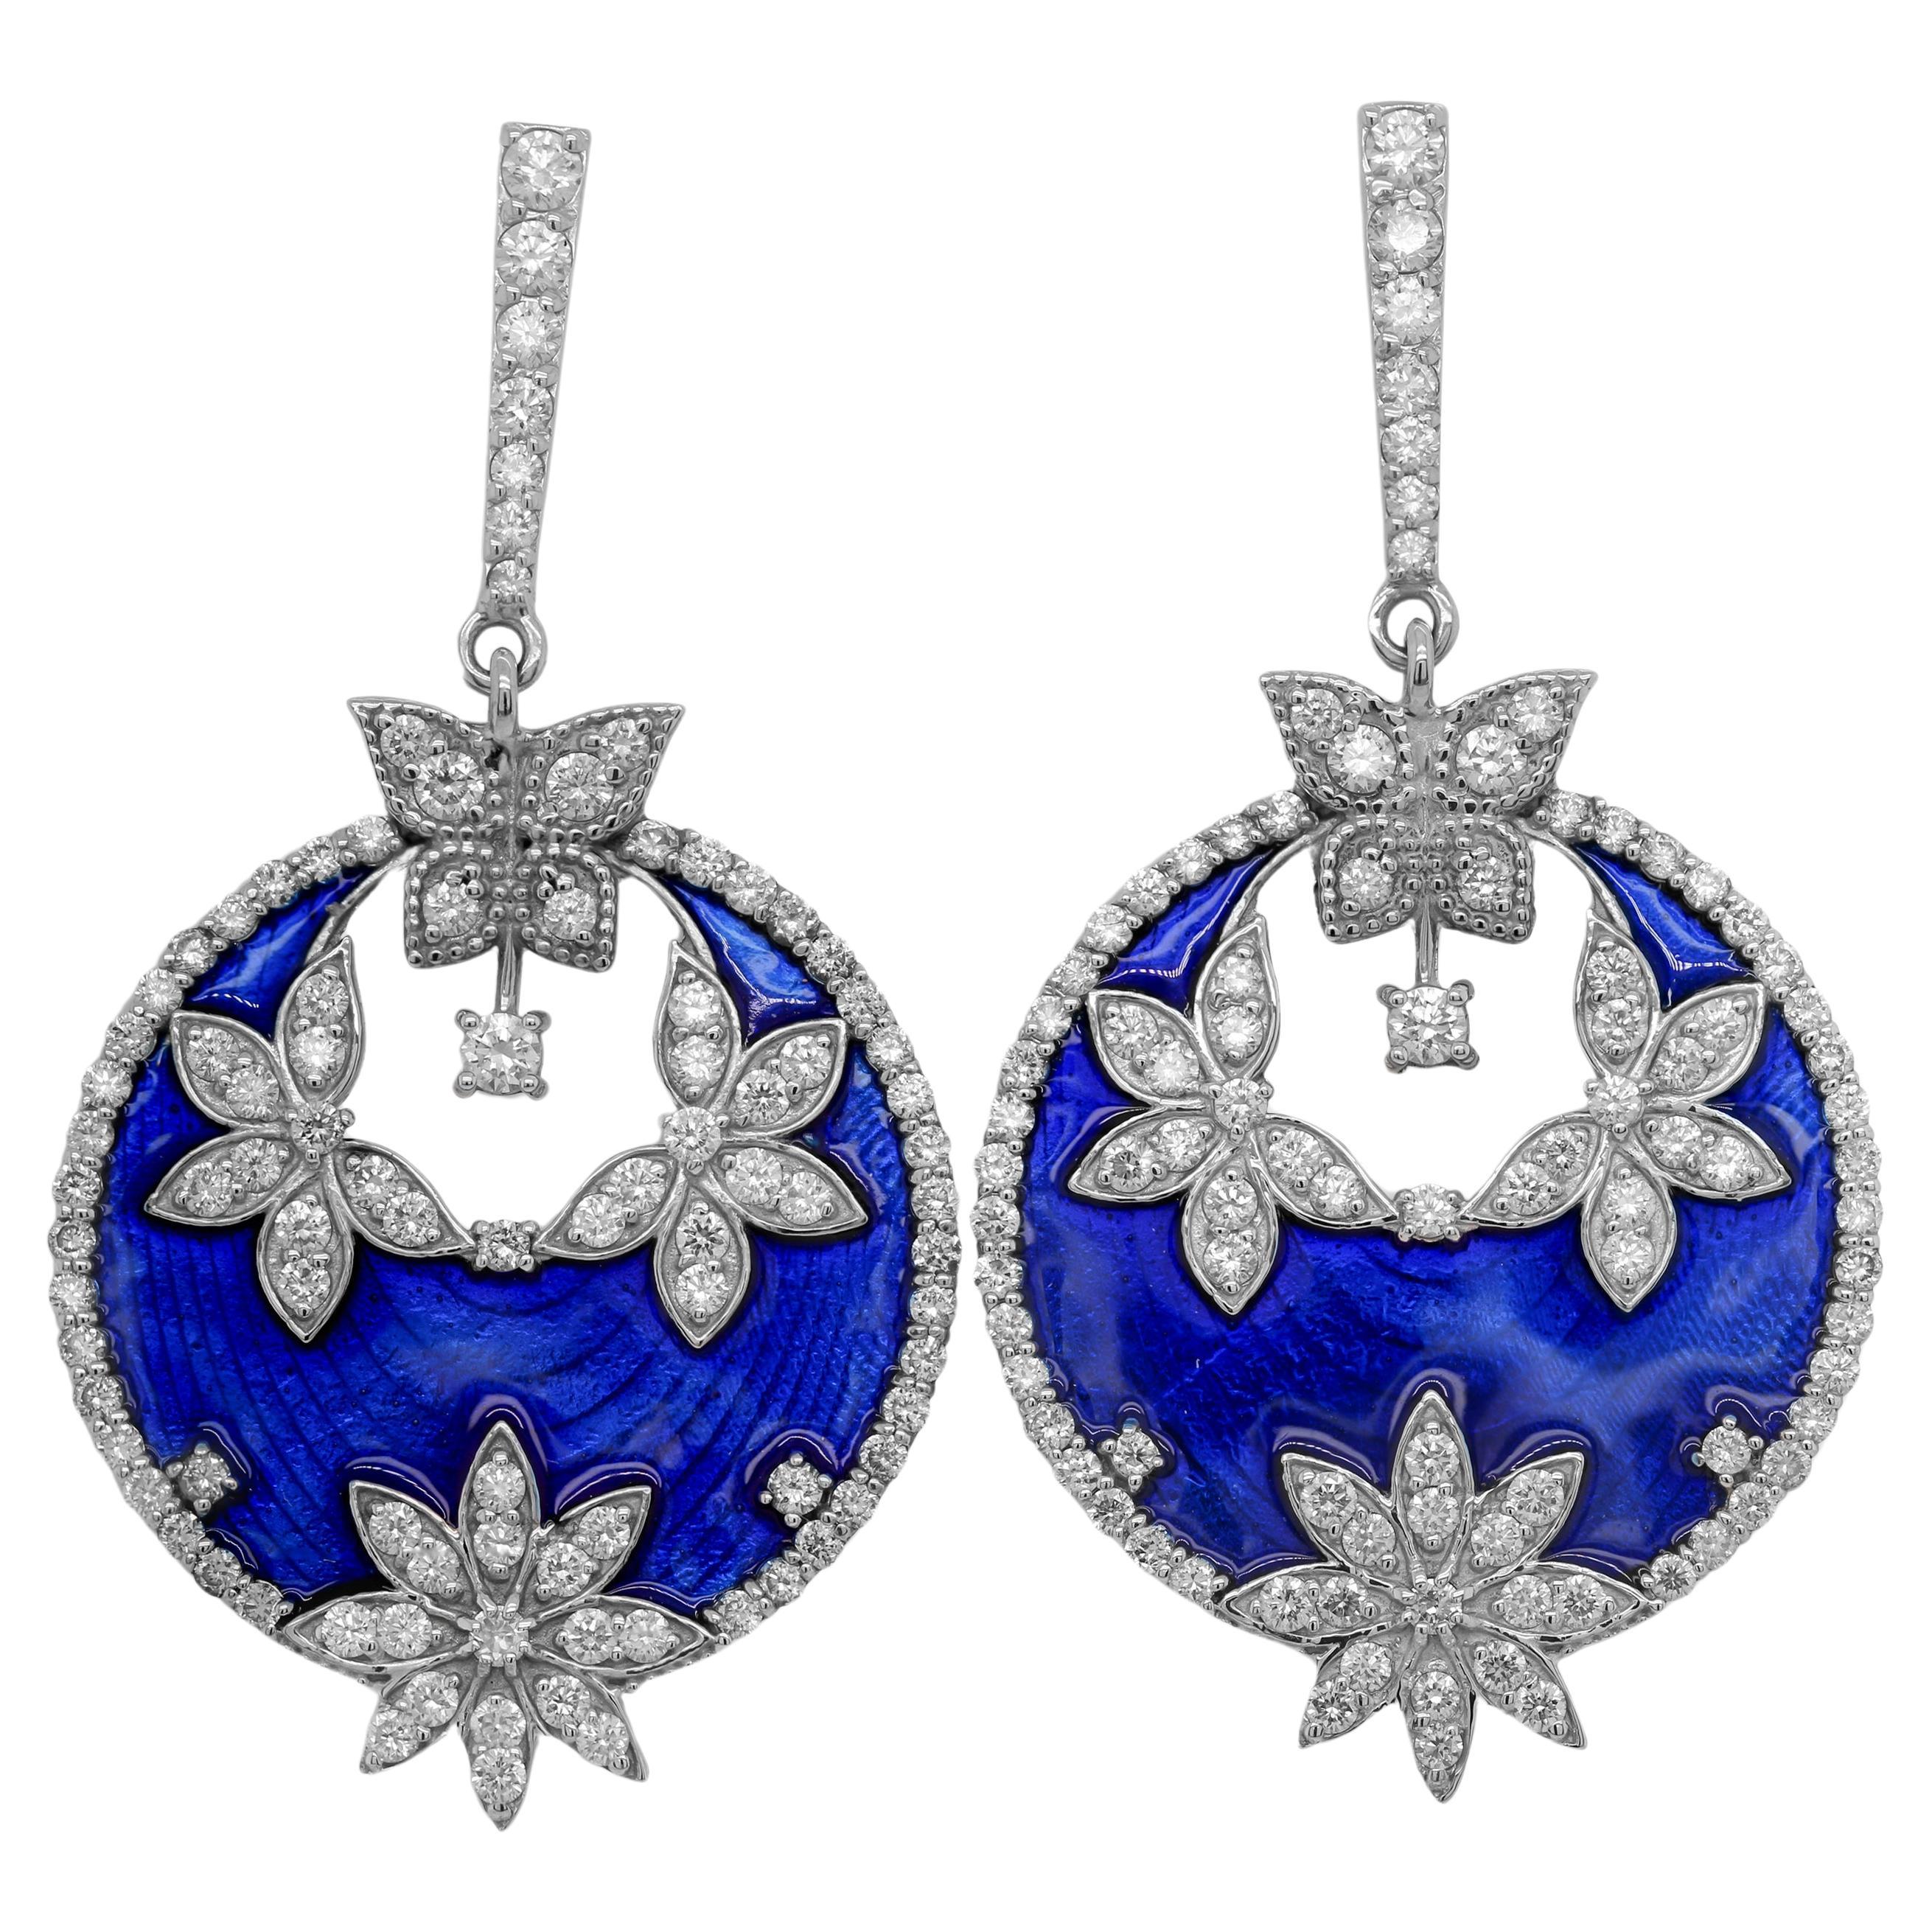 Stambolian 18K White Gold and Diamonds Cobalt Navy Blue Enamel Earrings For Sale